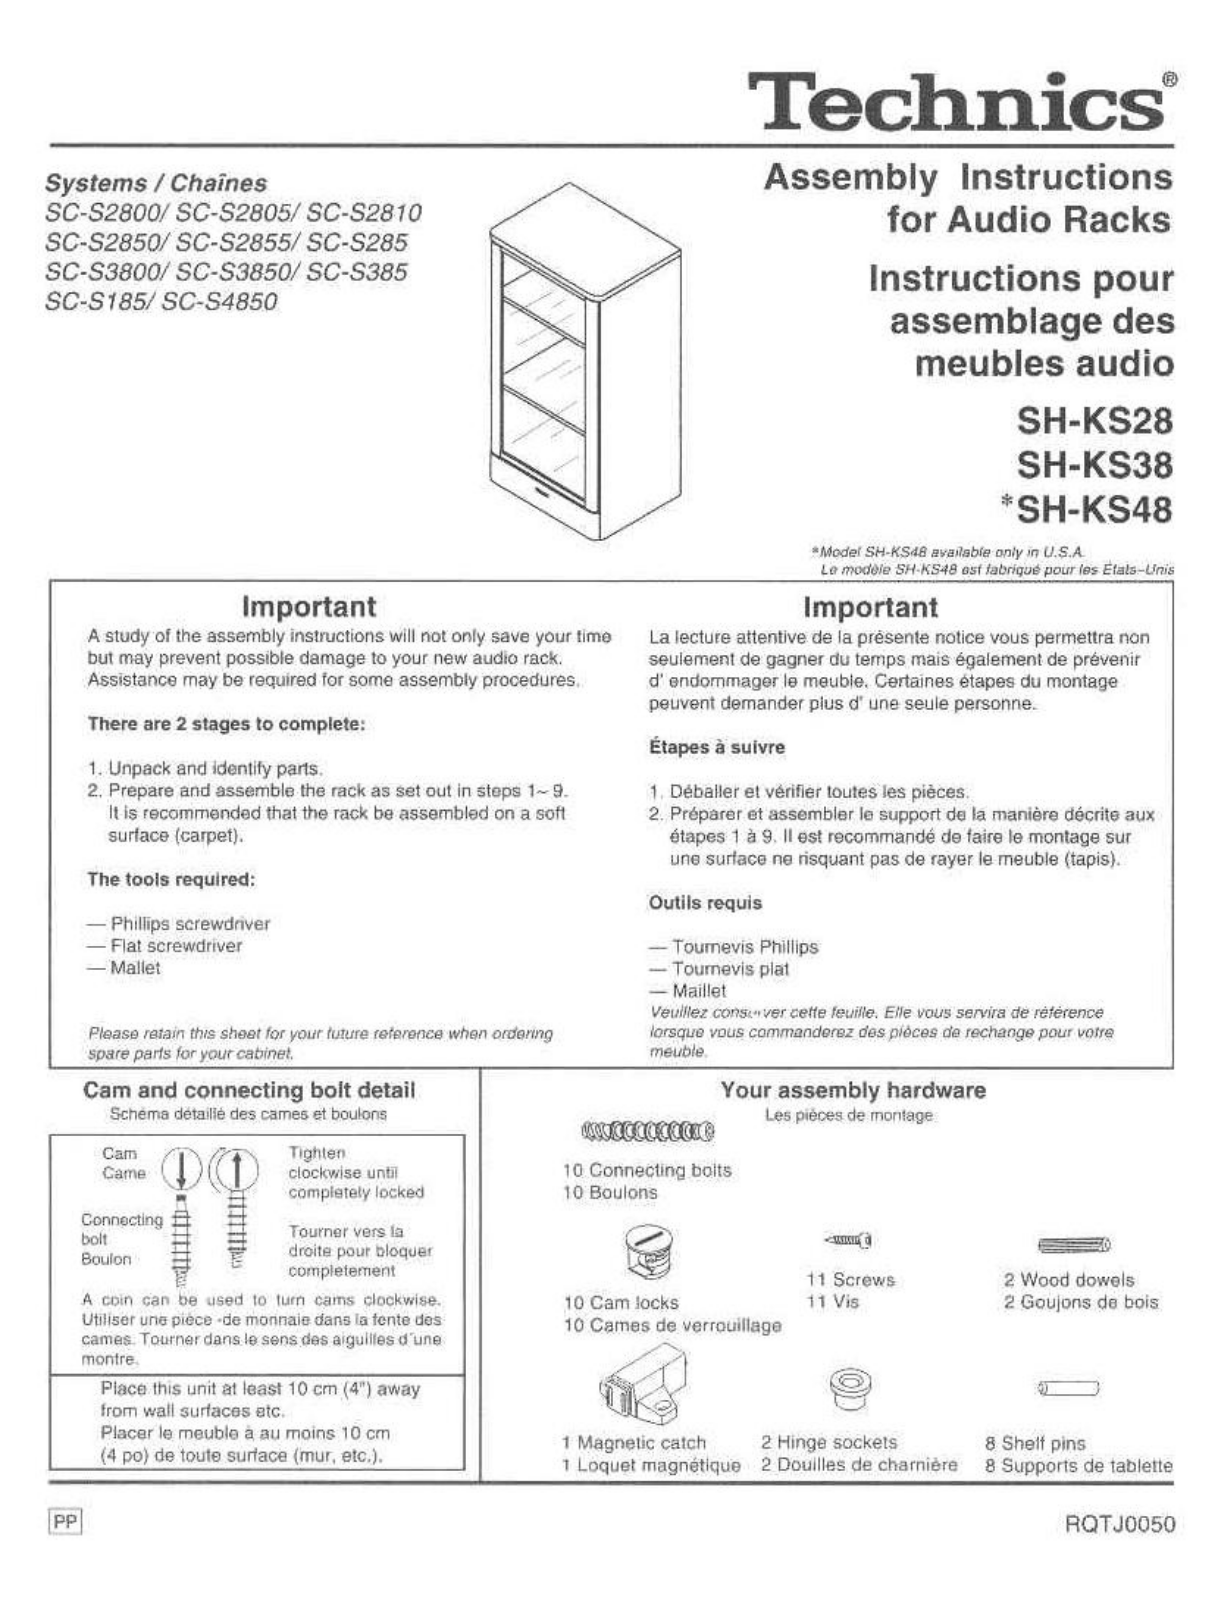 Technics SH-KS38, SH-KS28, SH-KS48 User Manual